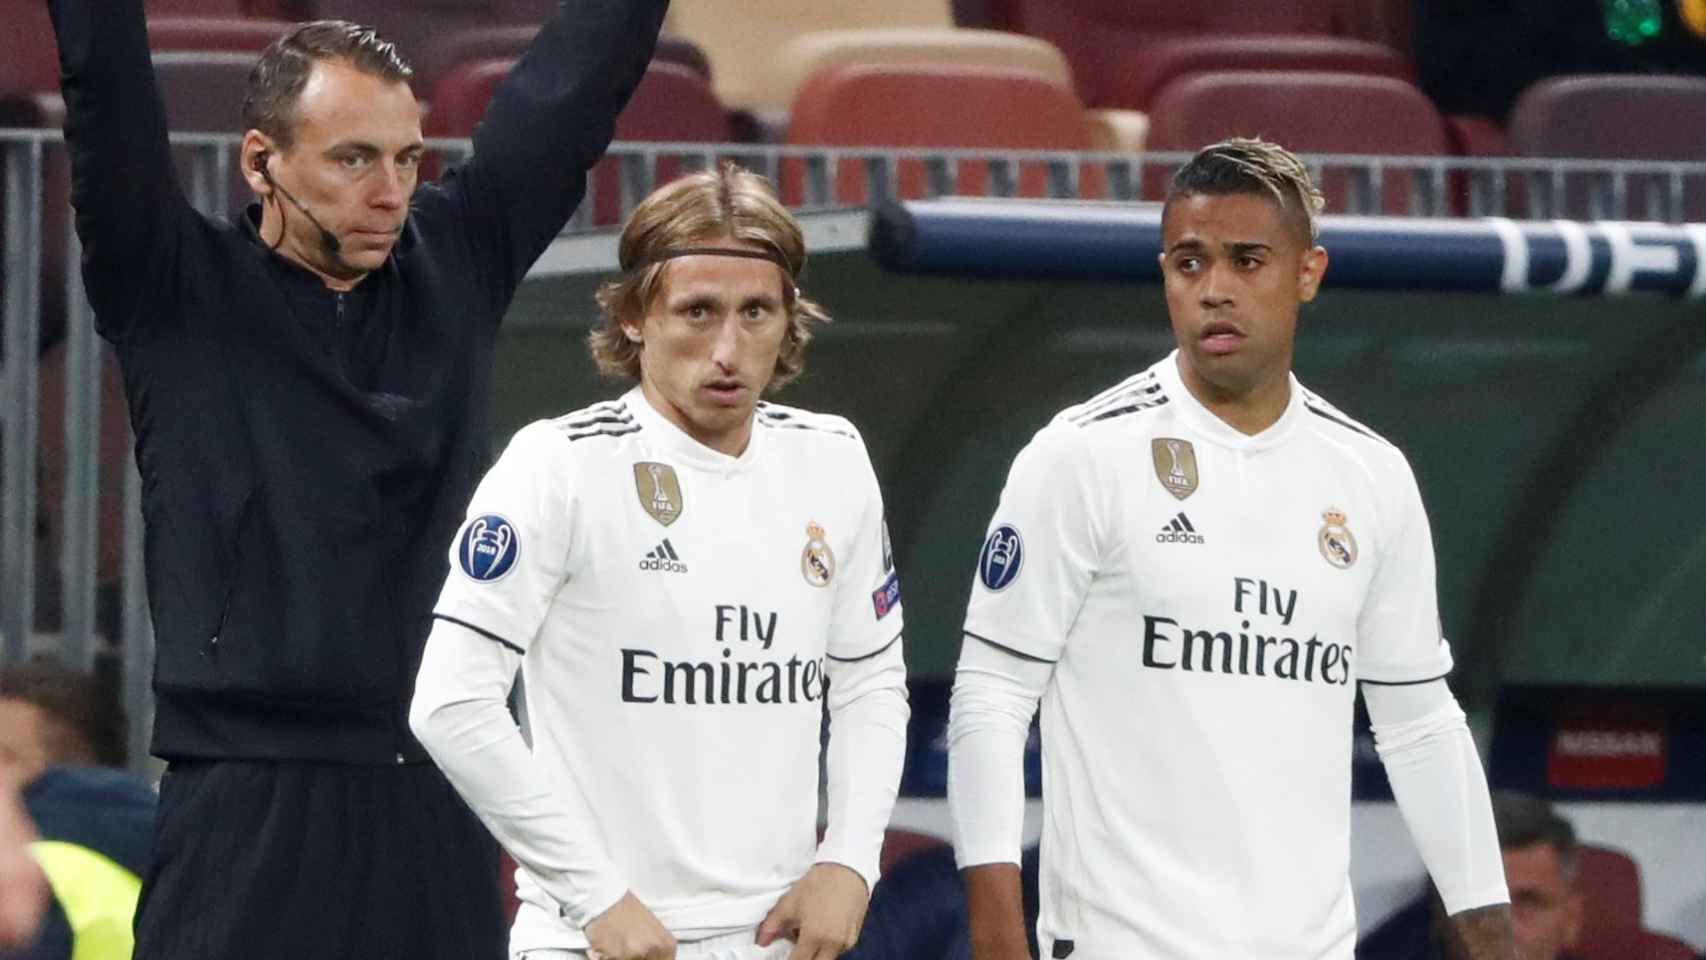 Modric y Mariano entran en la segunda parte para reforzar al equipo